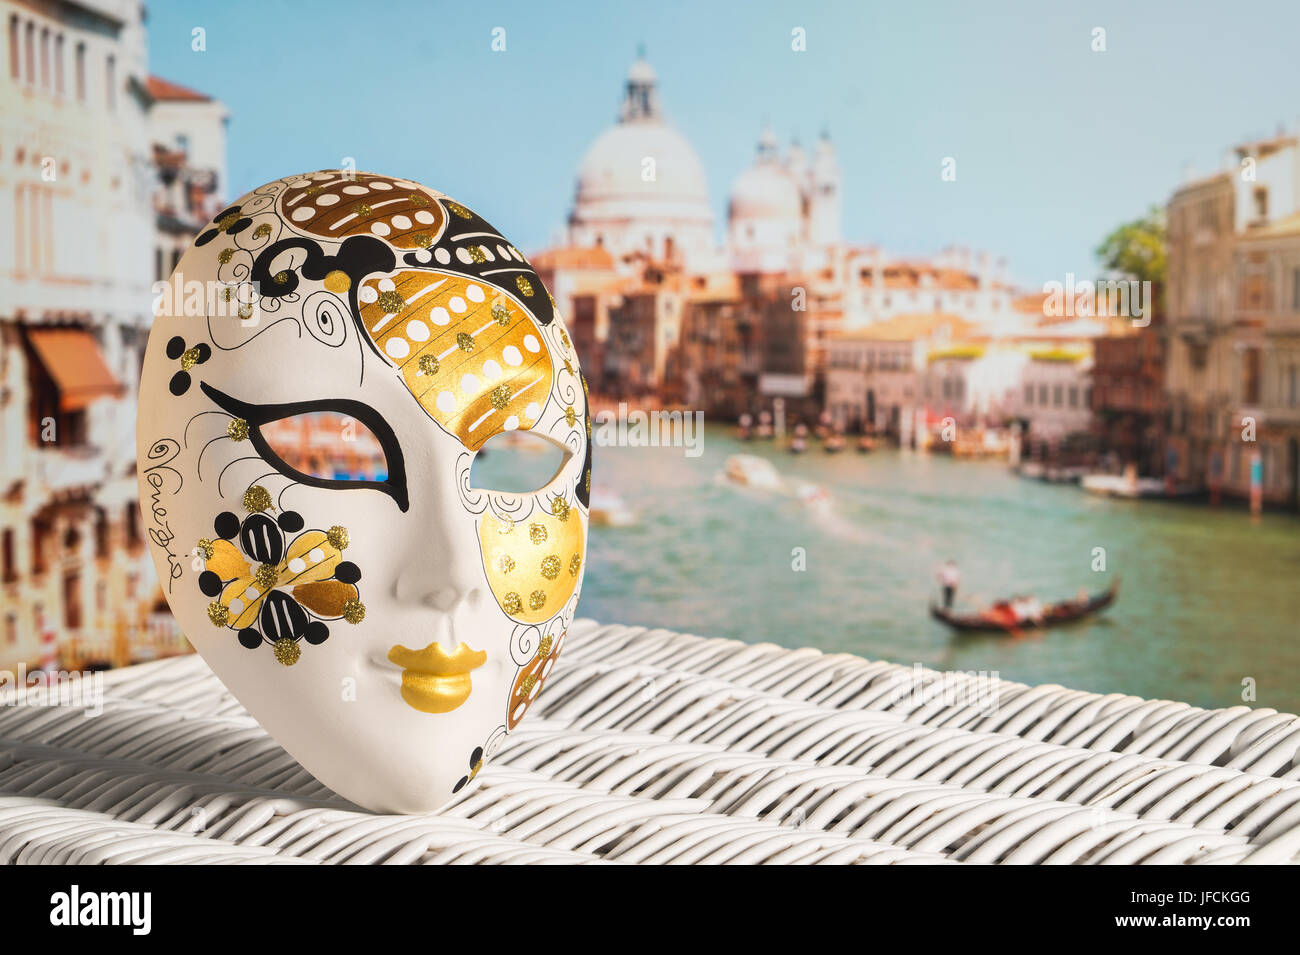 Venezianische Maske mit Canal Grande und Santa Maria della Salute Kirche im Hintergrund. Traditionelle Souvenir und wunderschönem Blick auf die Gondel. Stockfoto